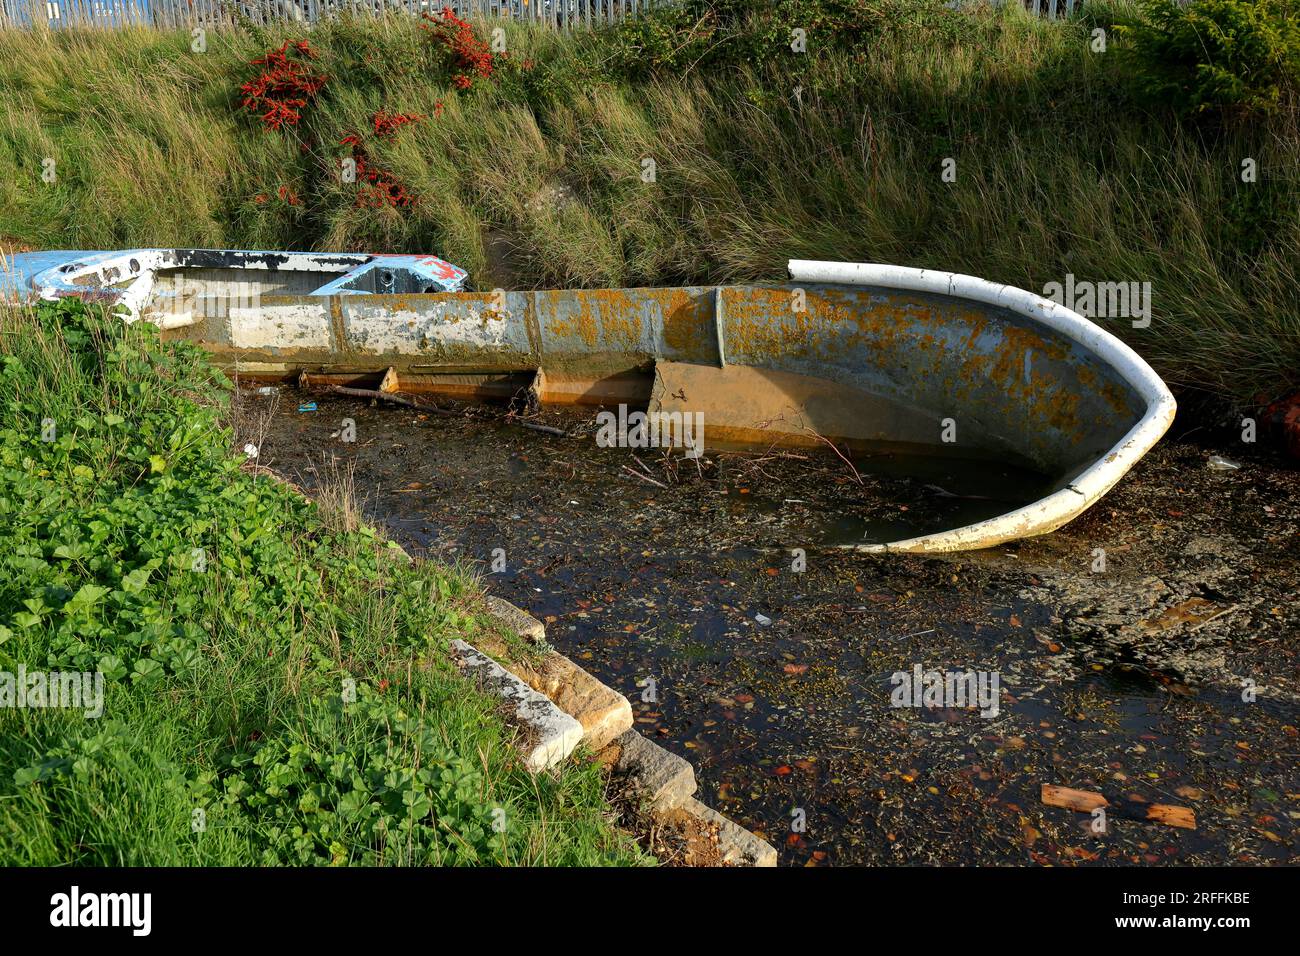 Die Fußspuren des Menschen: Ein verlassenes, heruntergekommenes, wasserbesiedeltes Boot neben einem See mit grünem Gras, Laub und Unkraut am Ufer. Stockfoto